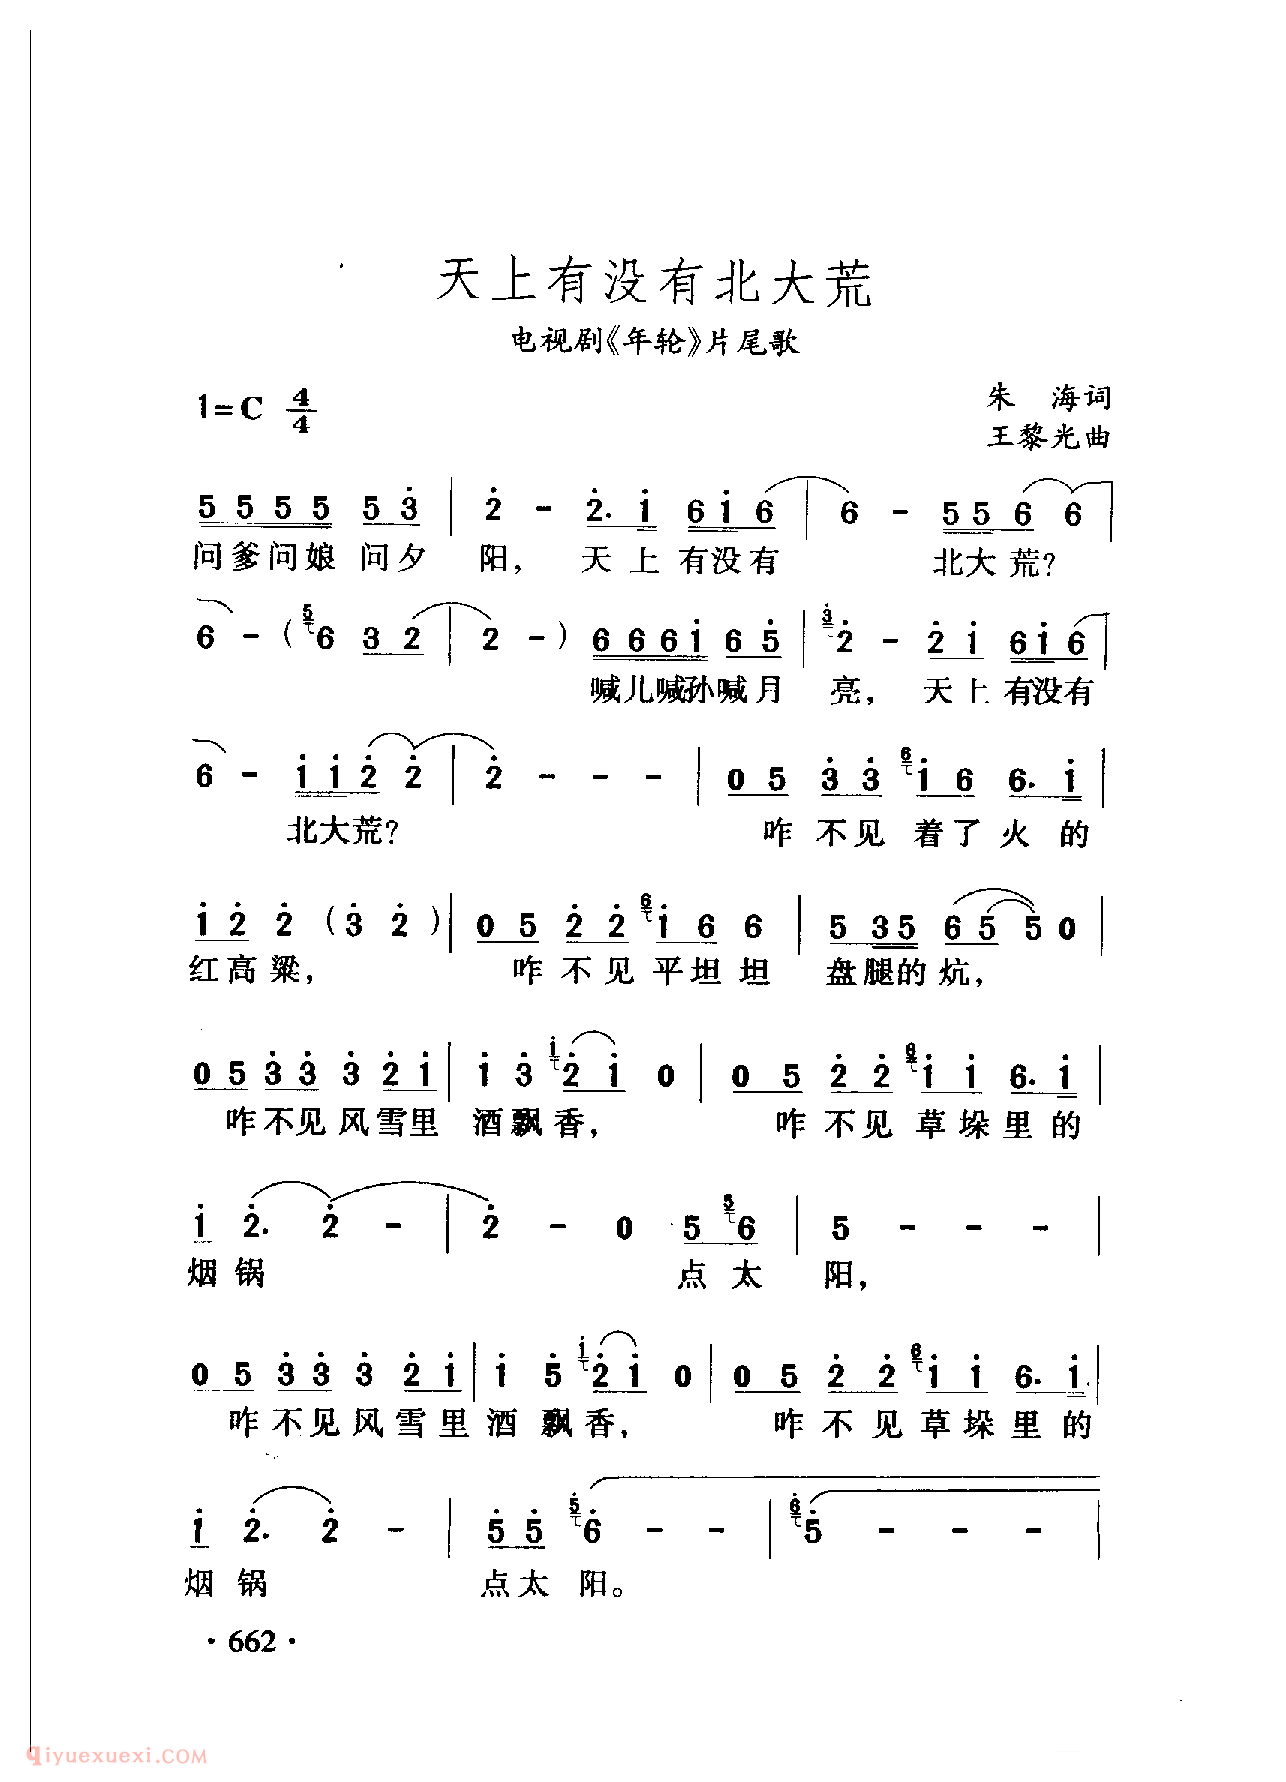 中国名歌[天上有没有北大荒 电视剧（年轮）片尾歌]乐谱